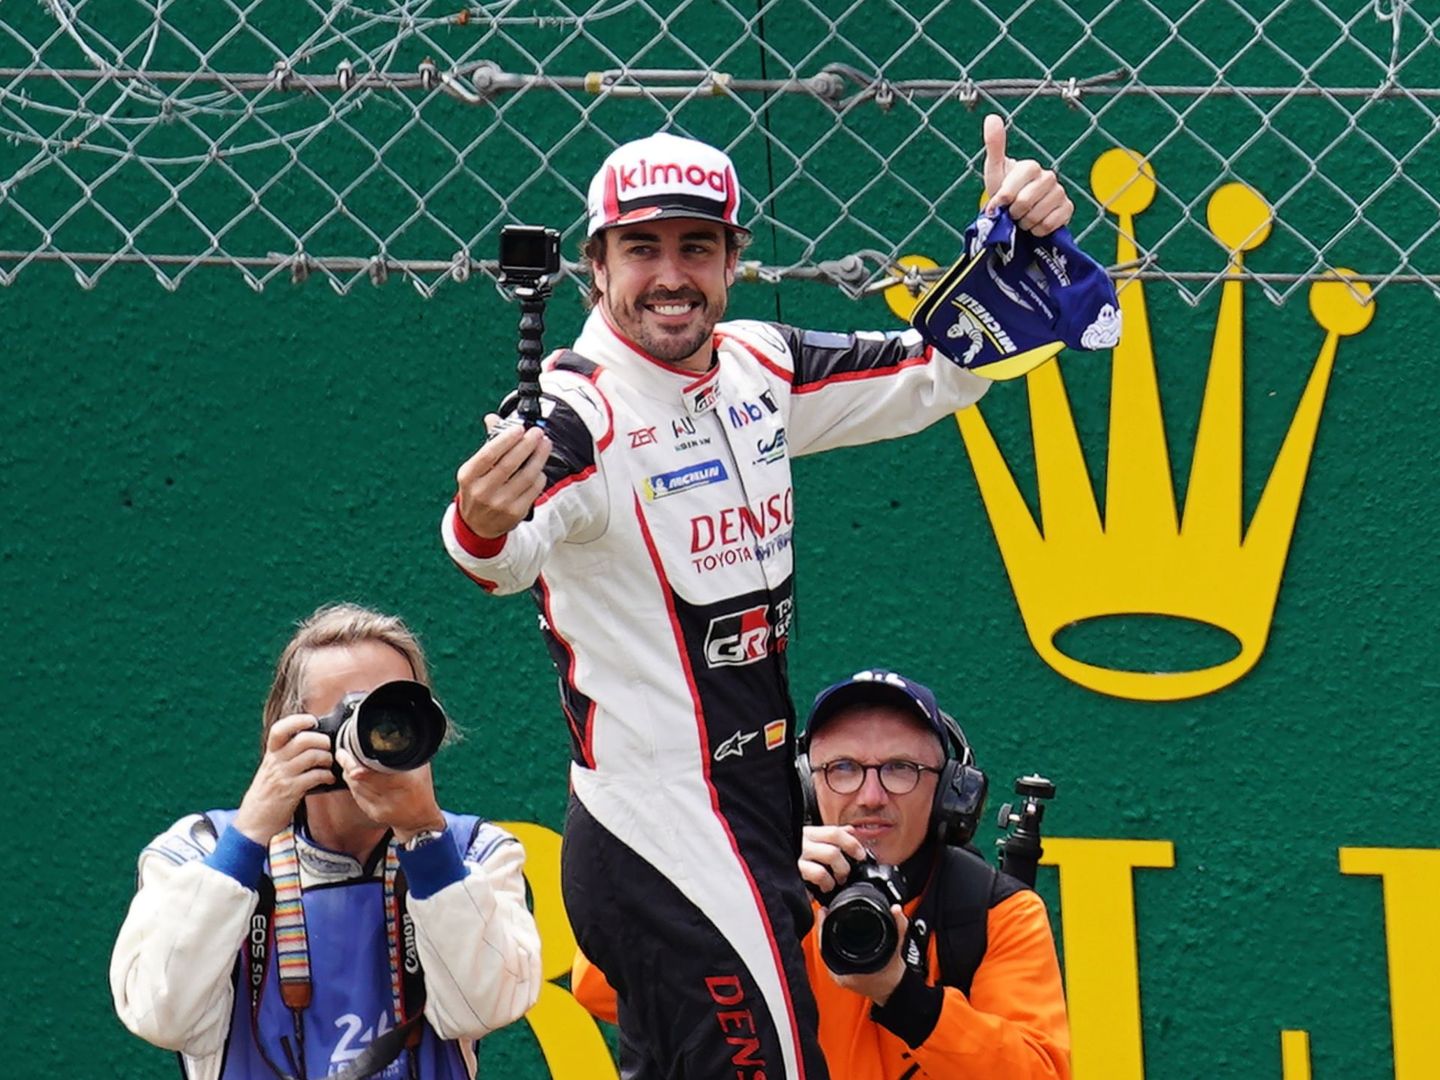 Alonso sabe lo que es ganar en dos ocasiones en las 24 Horas de Le Mans. (EFE/Eddy Lemais)